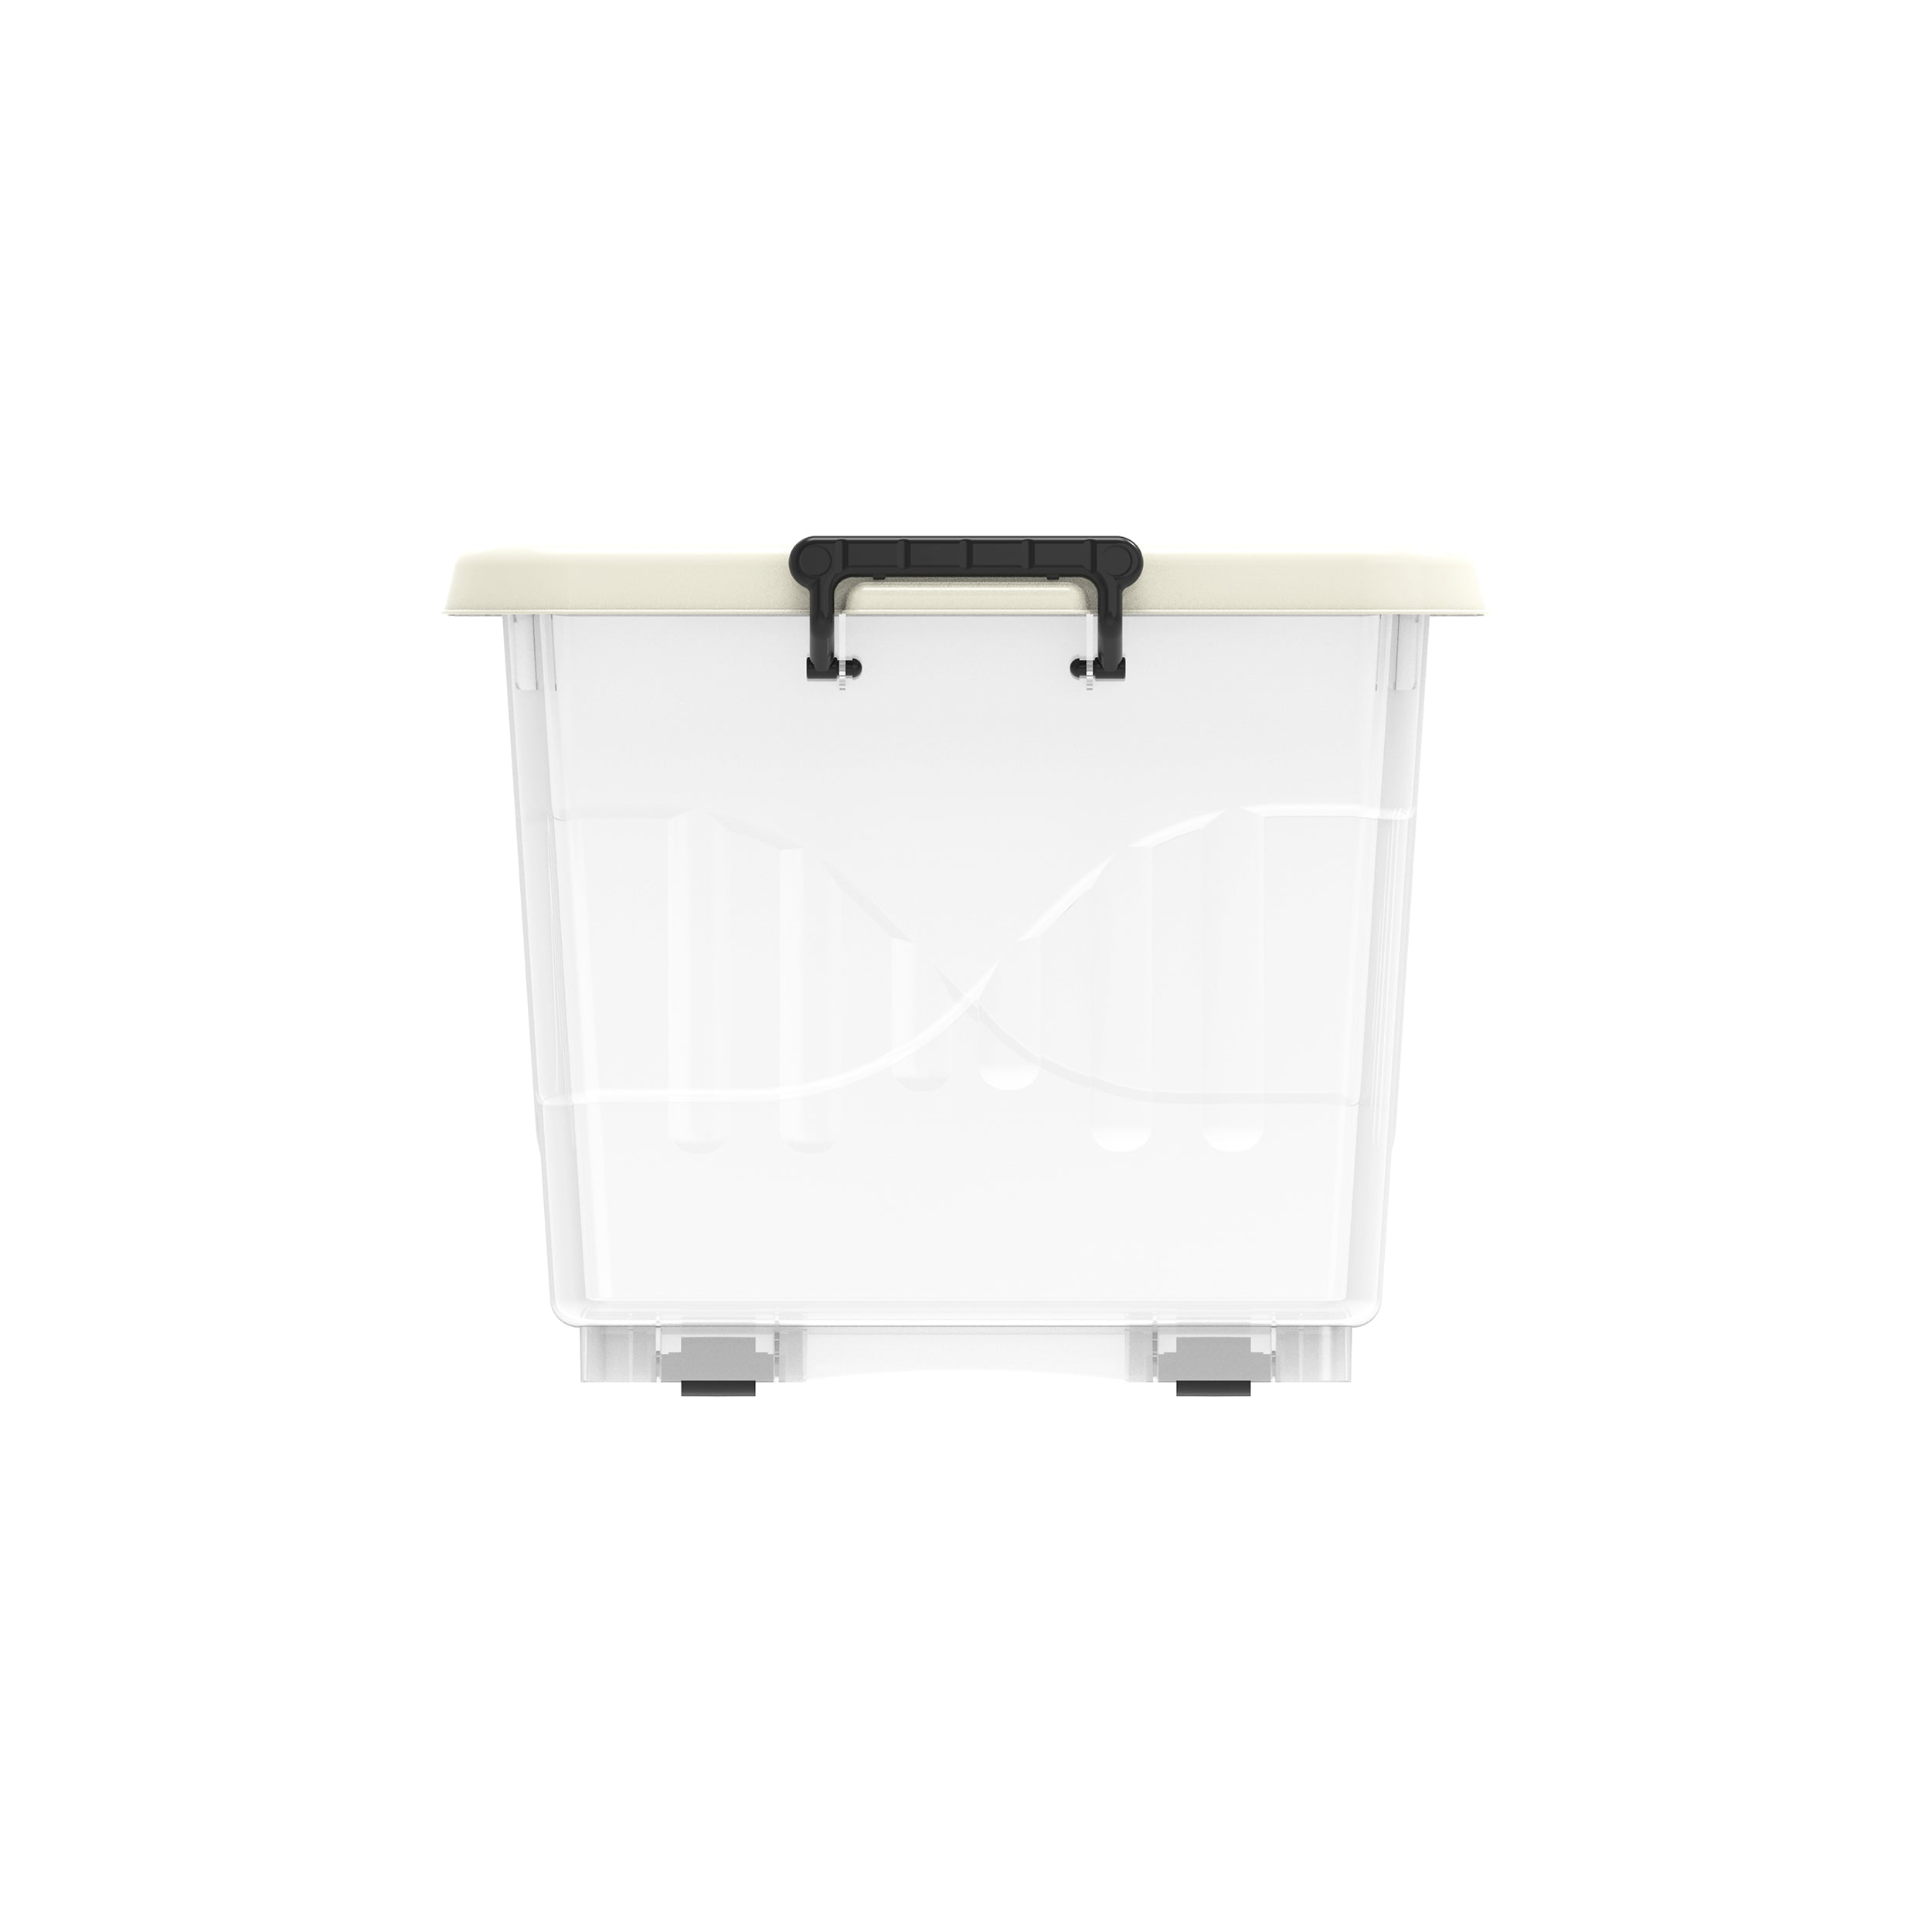 33L Clear Plastic Storage Box with Wheels & Lockable Lid - Cosmoplast Kuwait